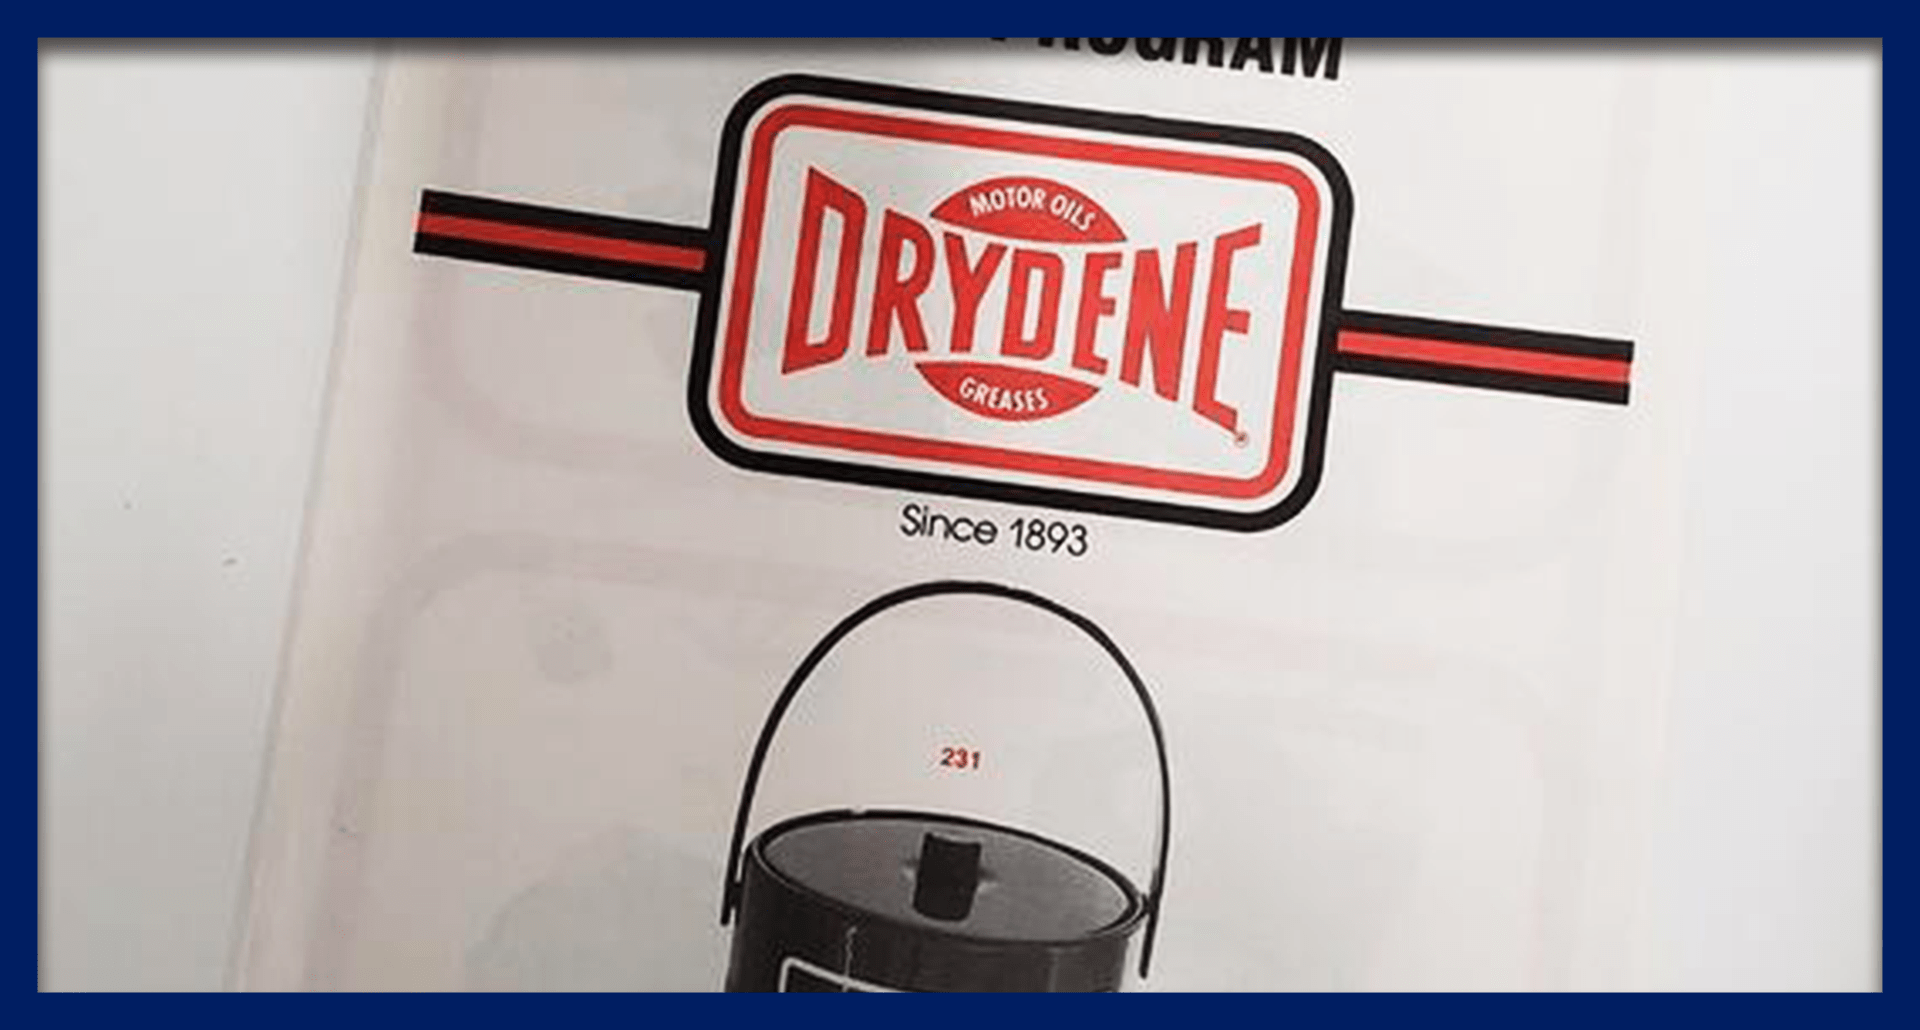 Case Study: Drydene Oil's Program